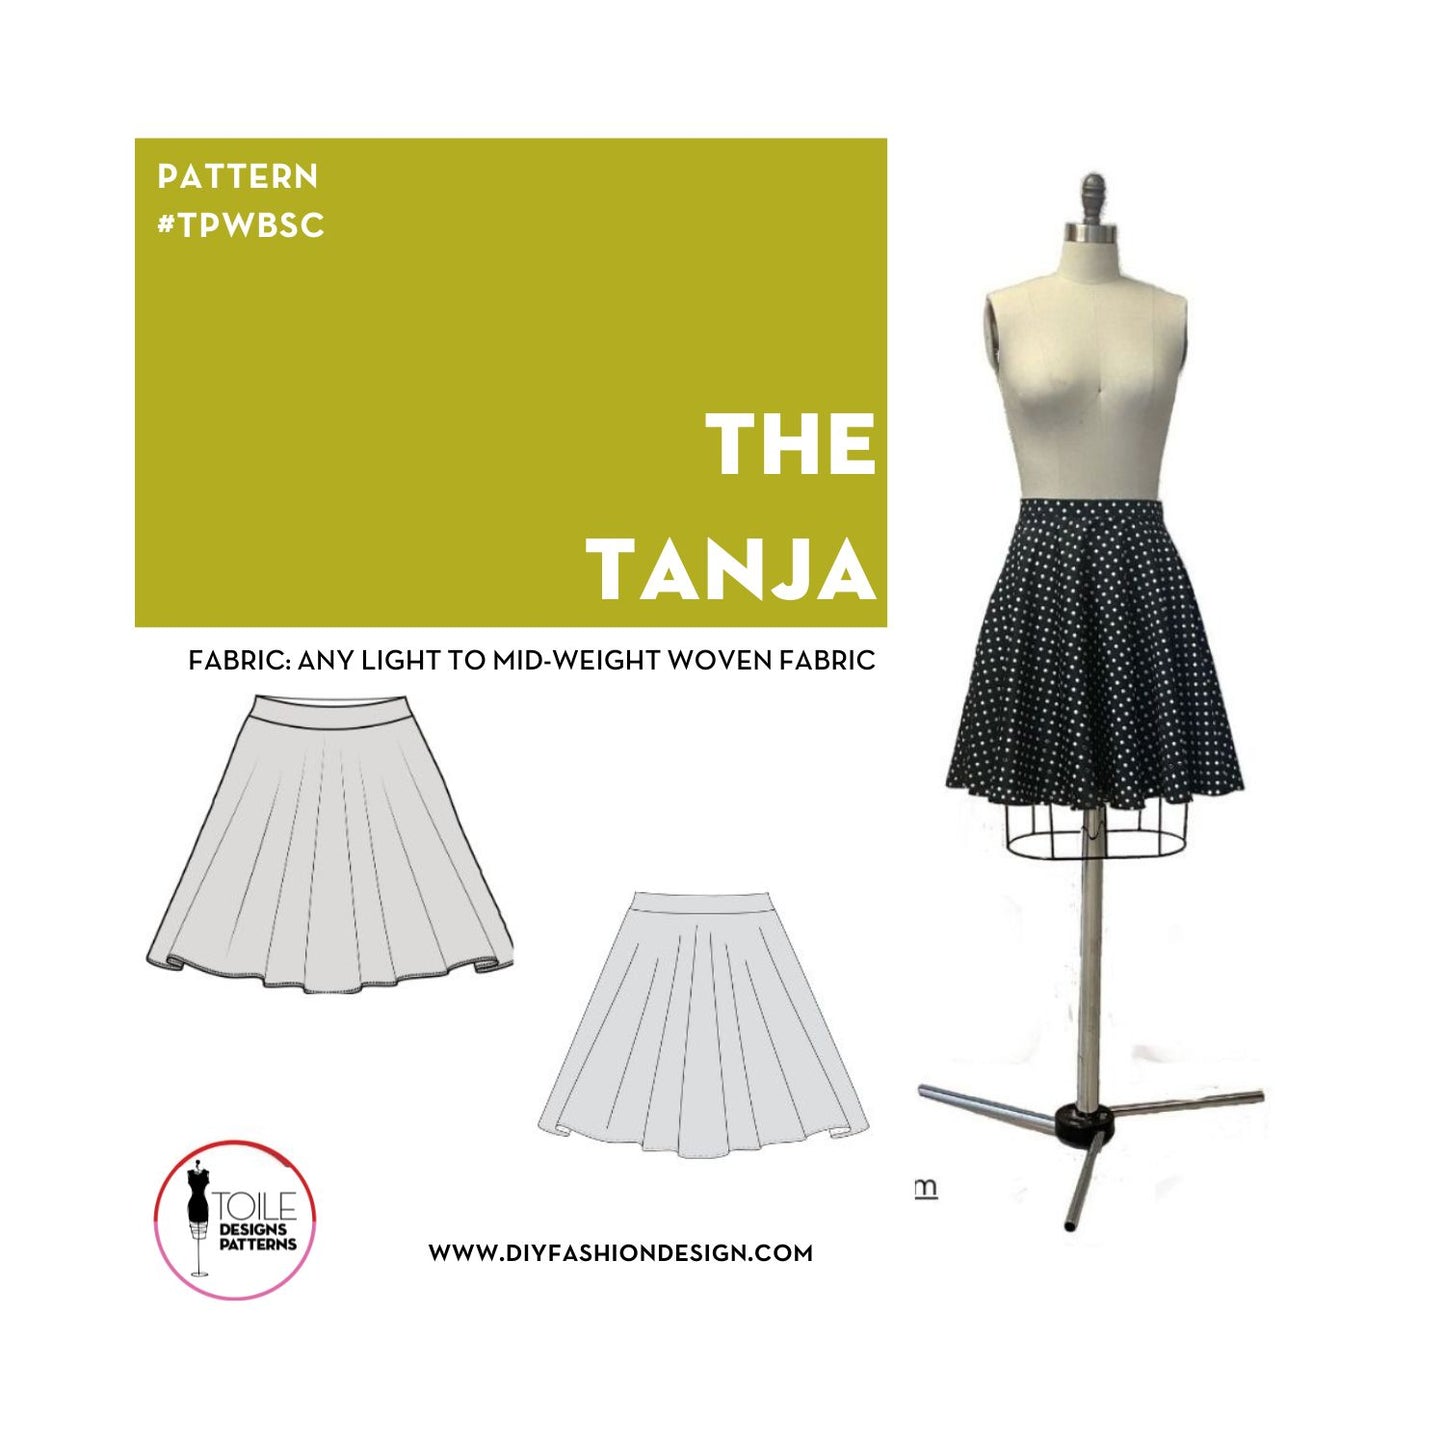 The Tanja